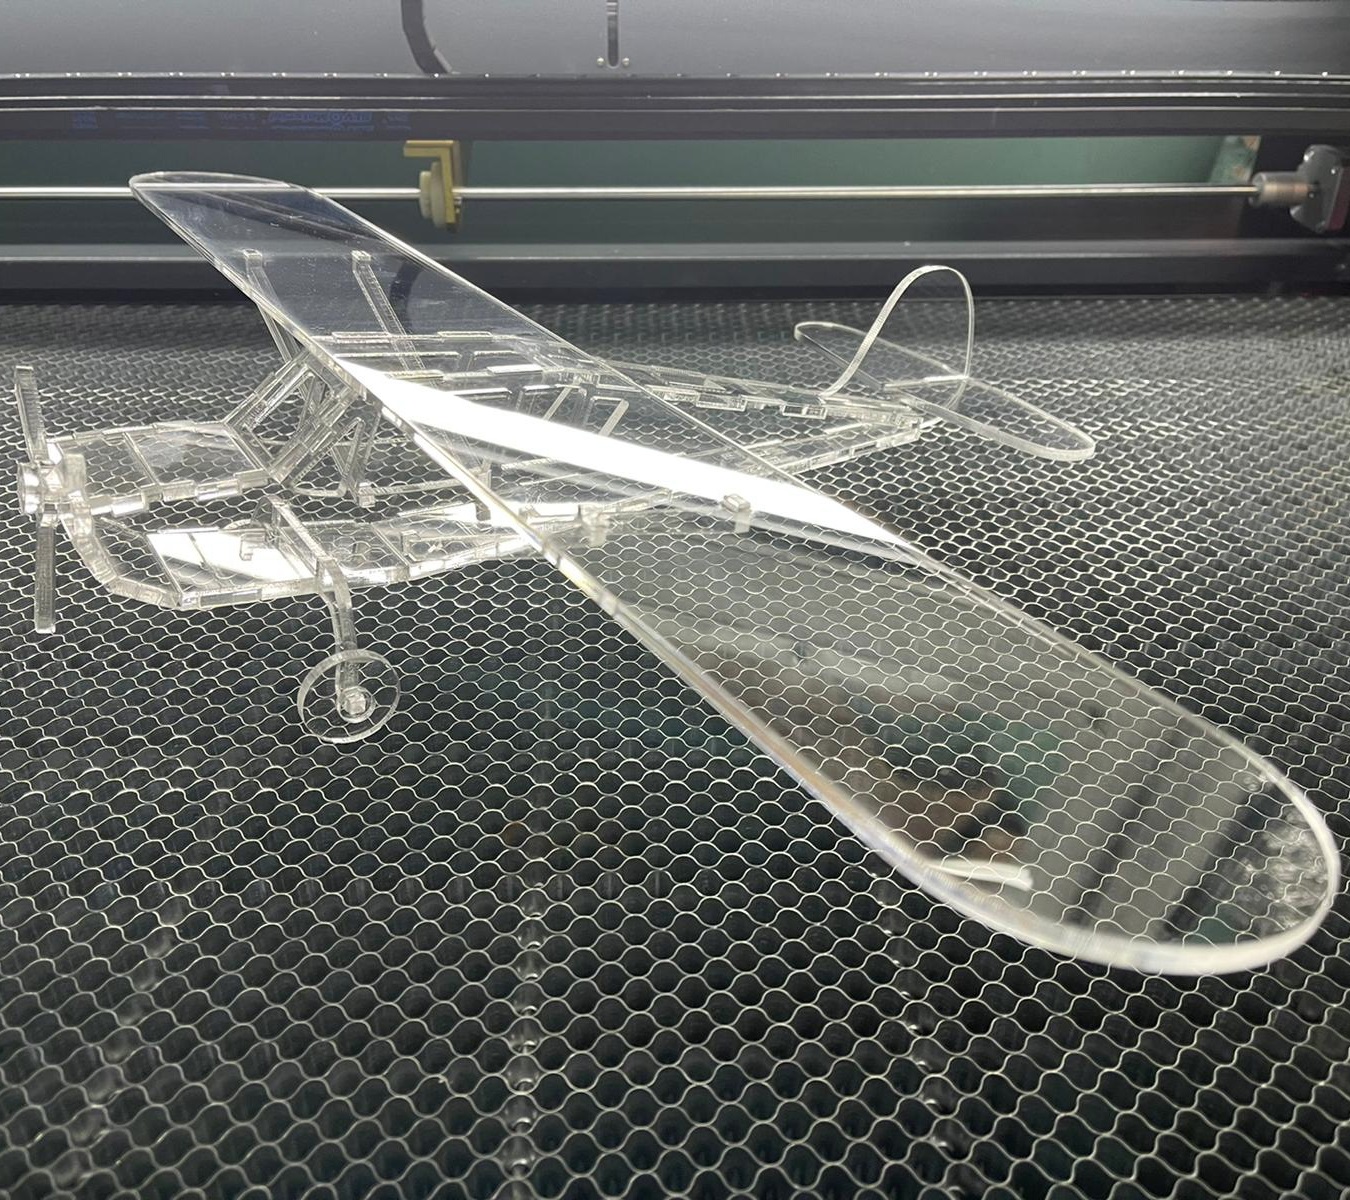 Rompecabezas 3D de acrílico de aviones ligeros cortados con láser